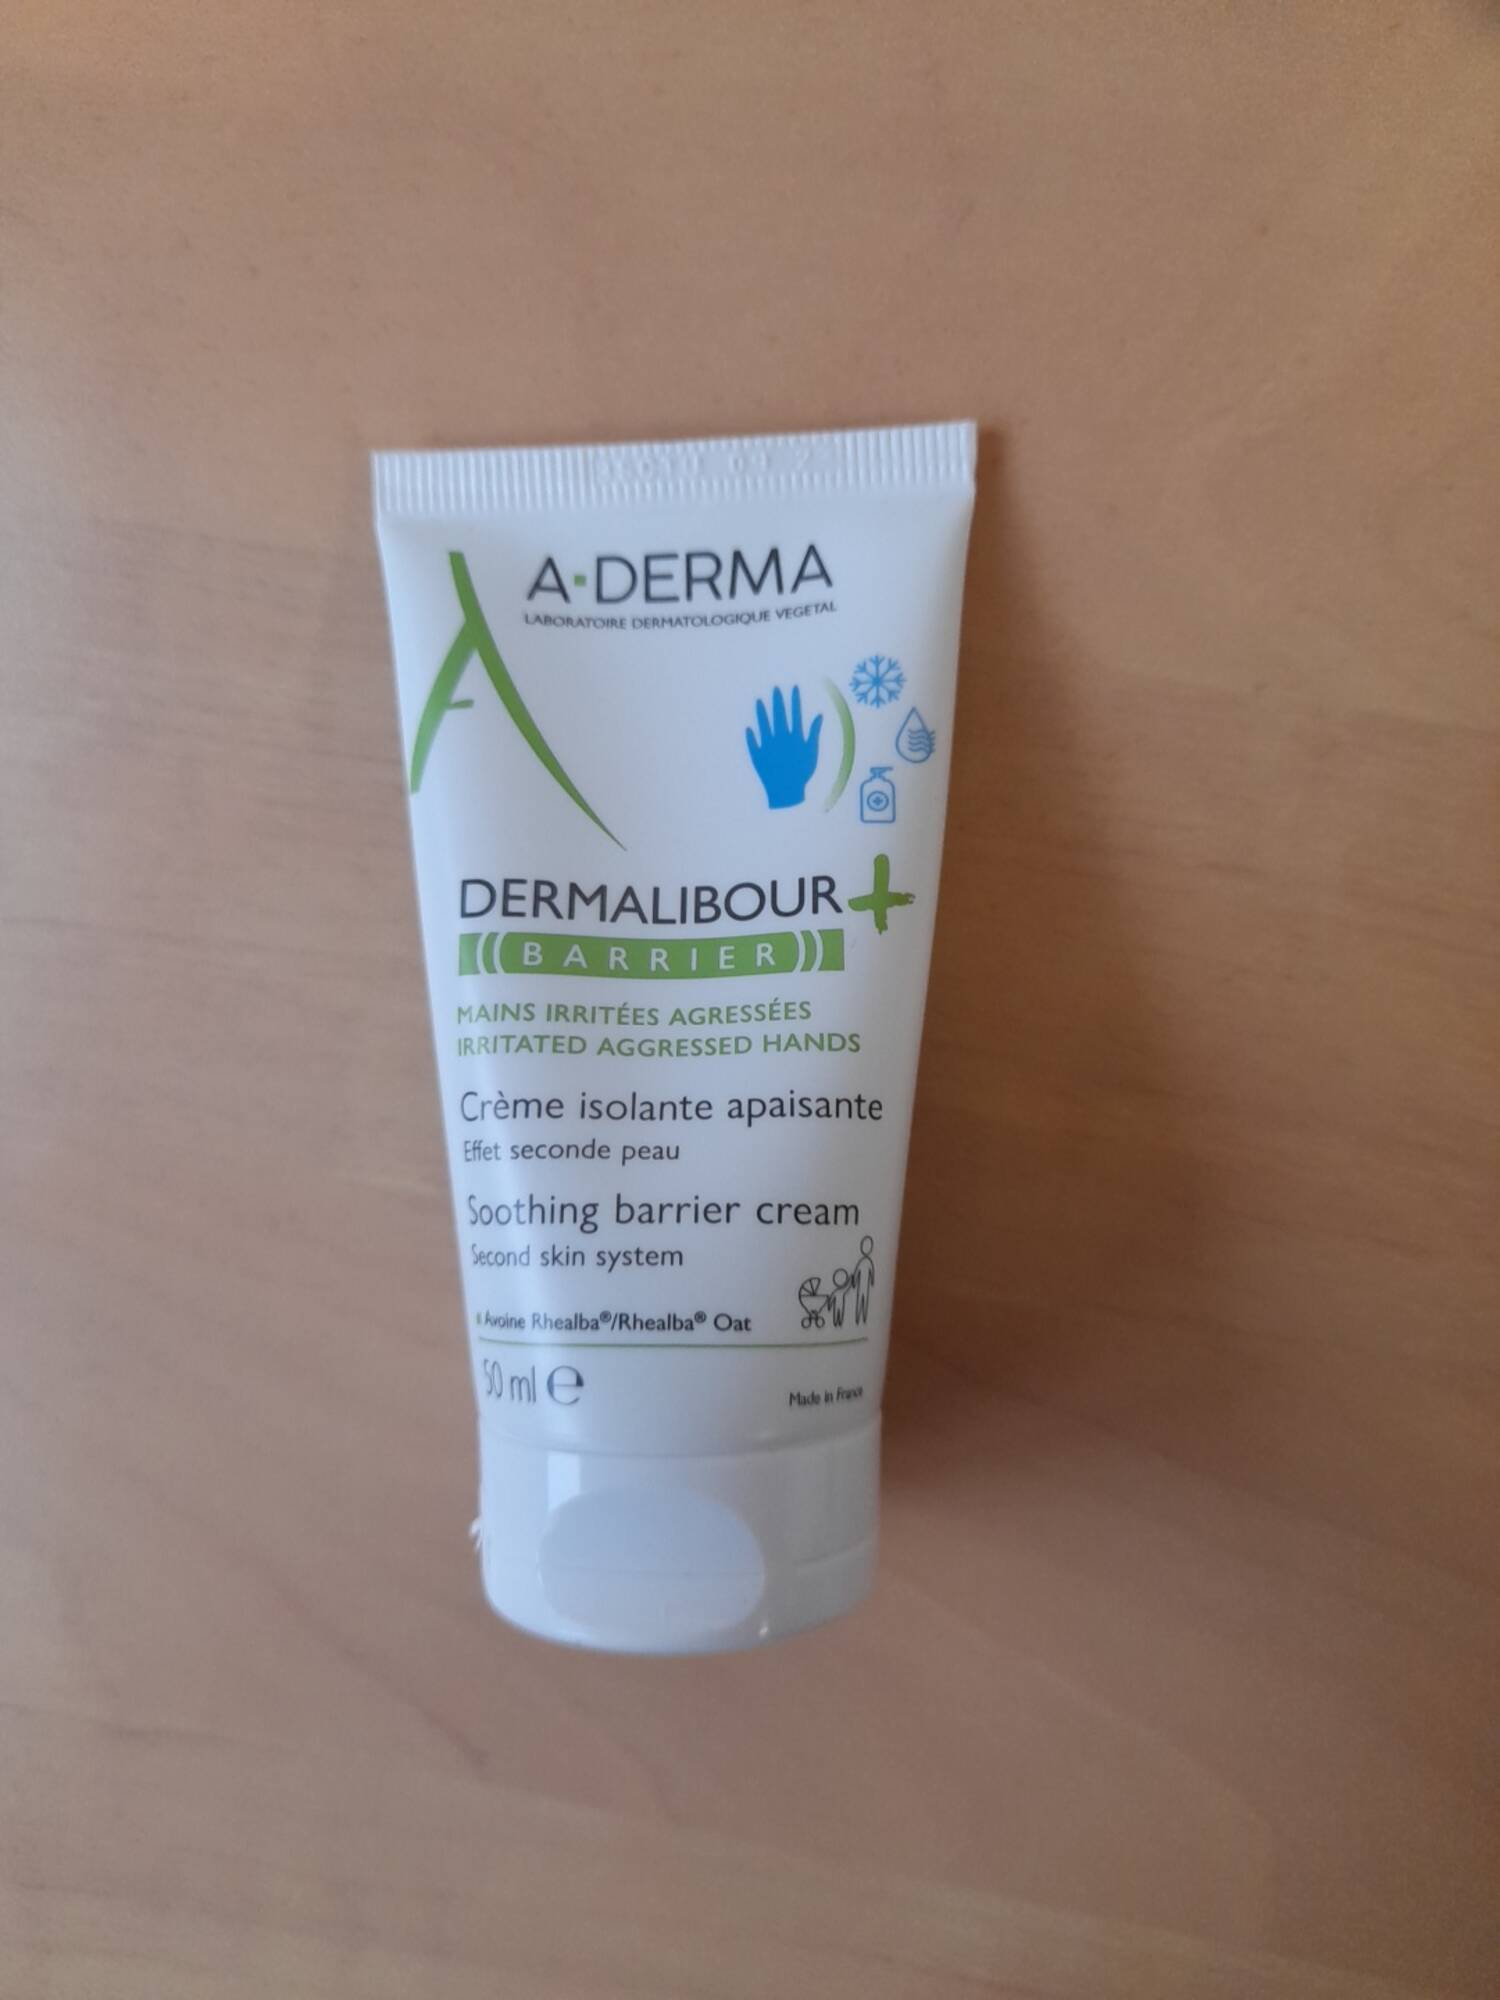 A-DERMA - Dermalibour + Barrier- Crème isolante apaisante mains